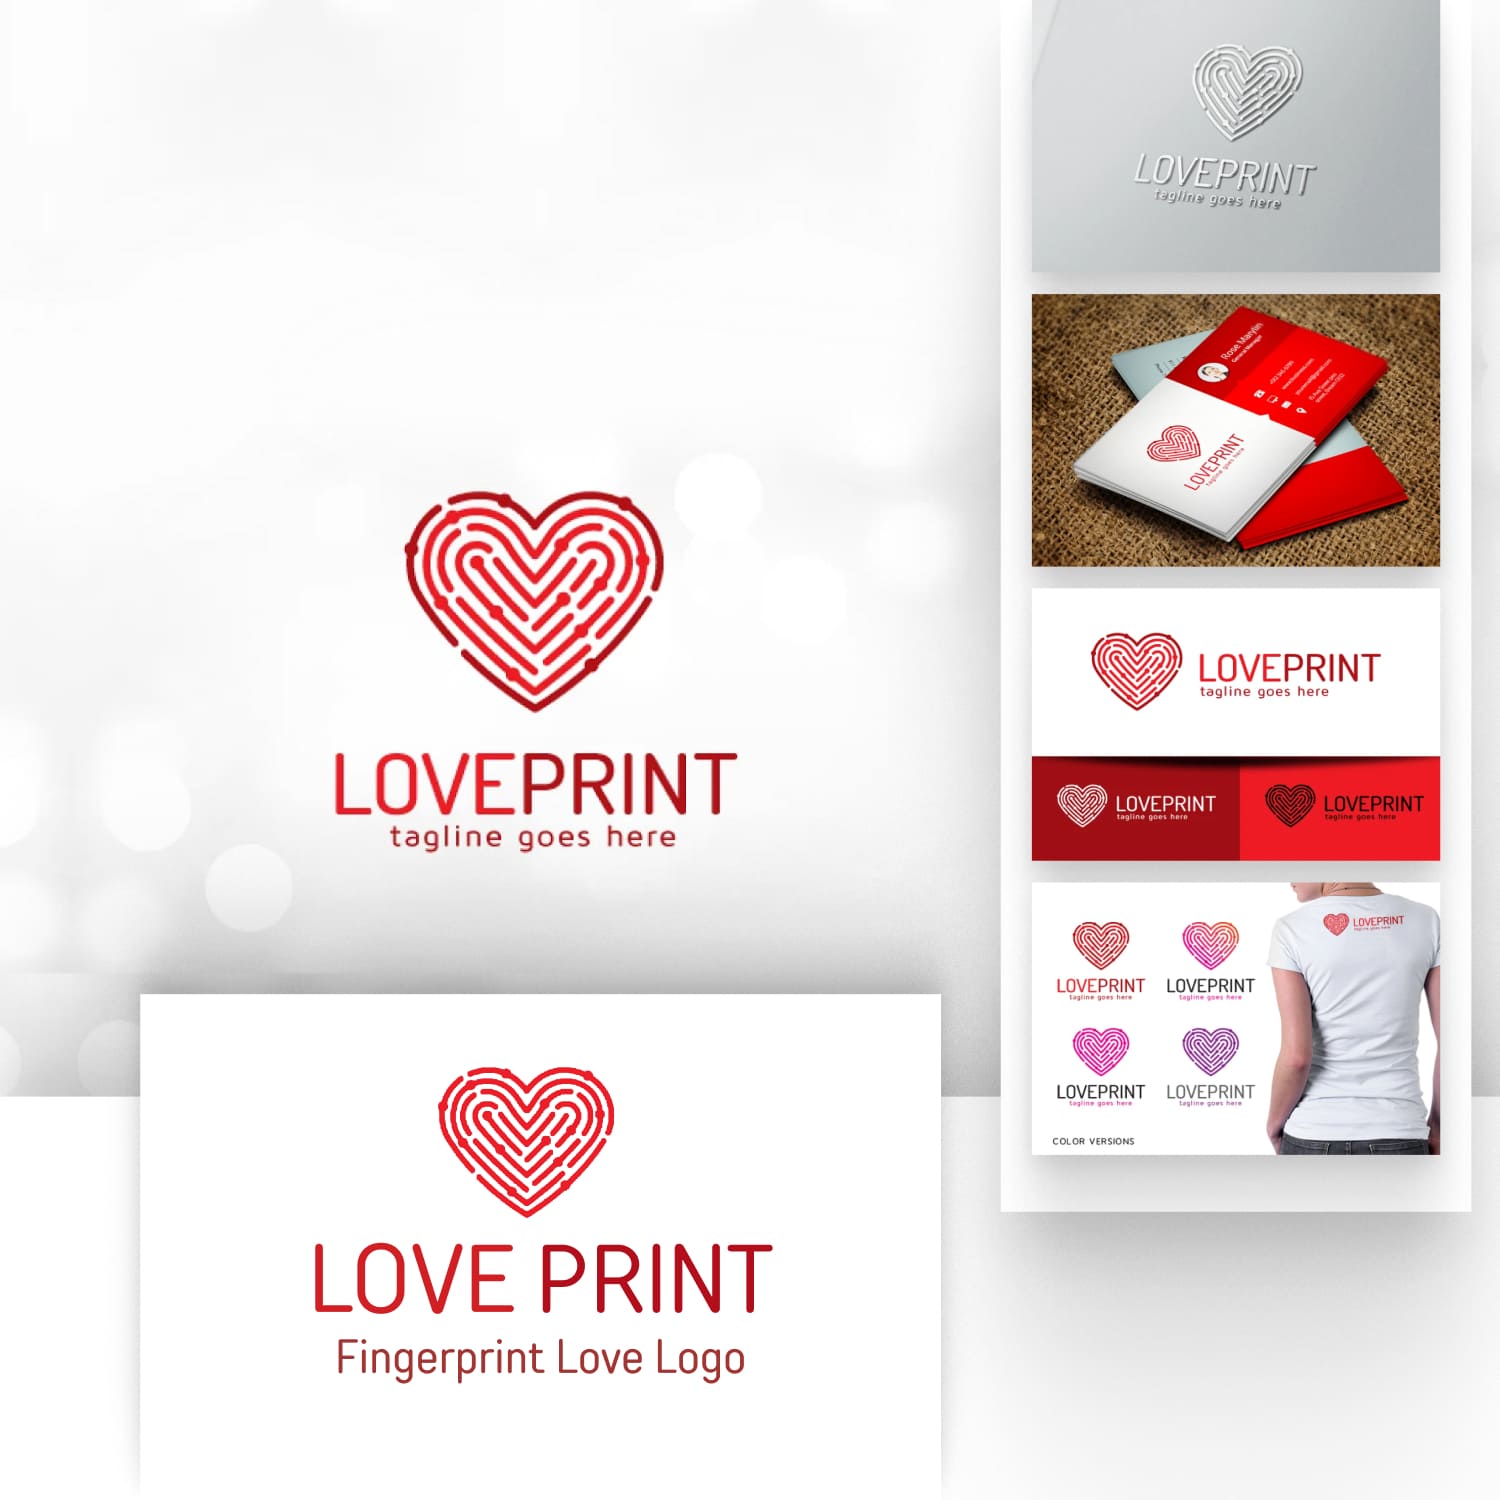 Love Print - Fingerprint Love Logo.